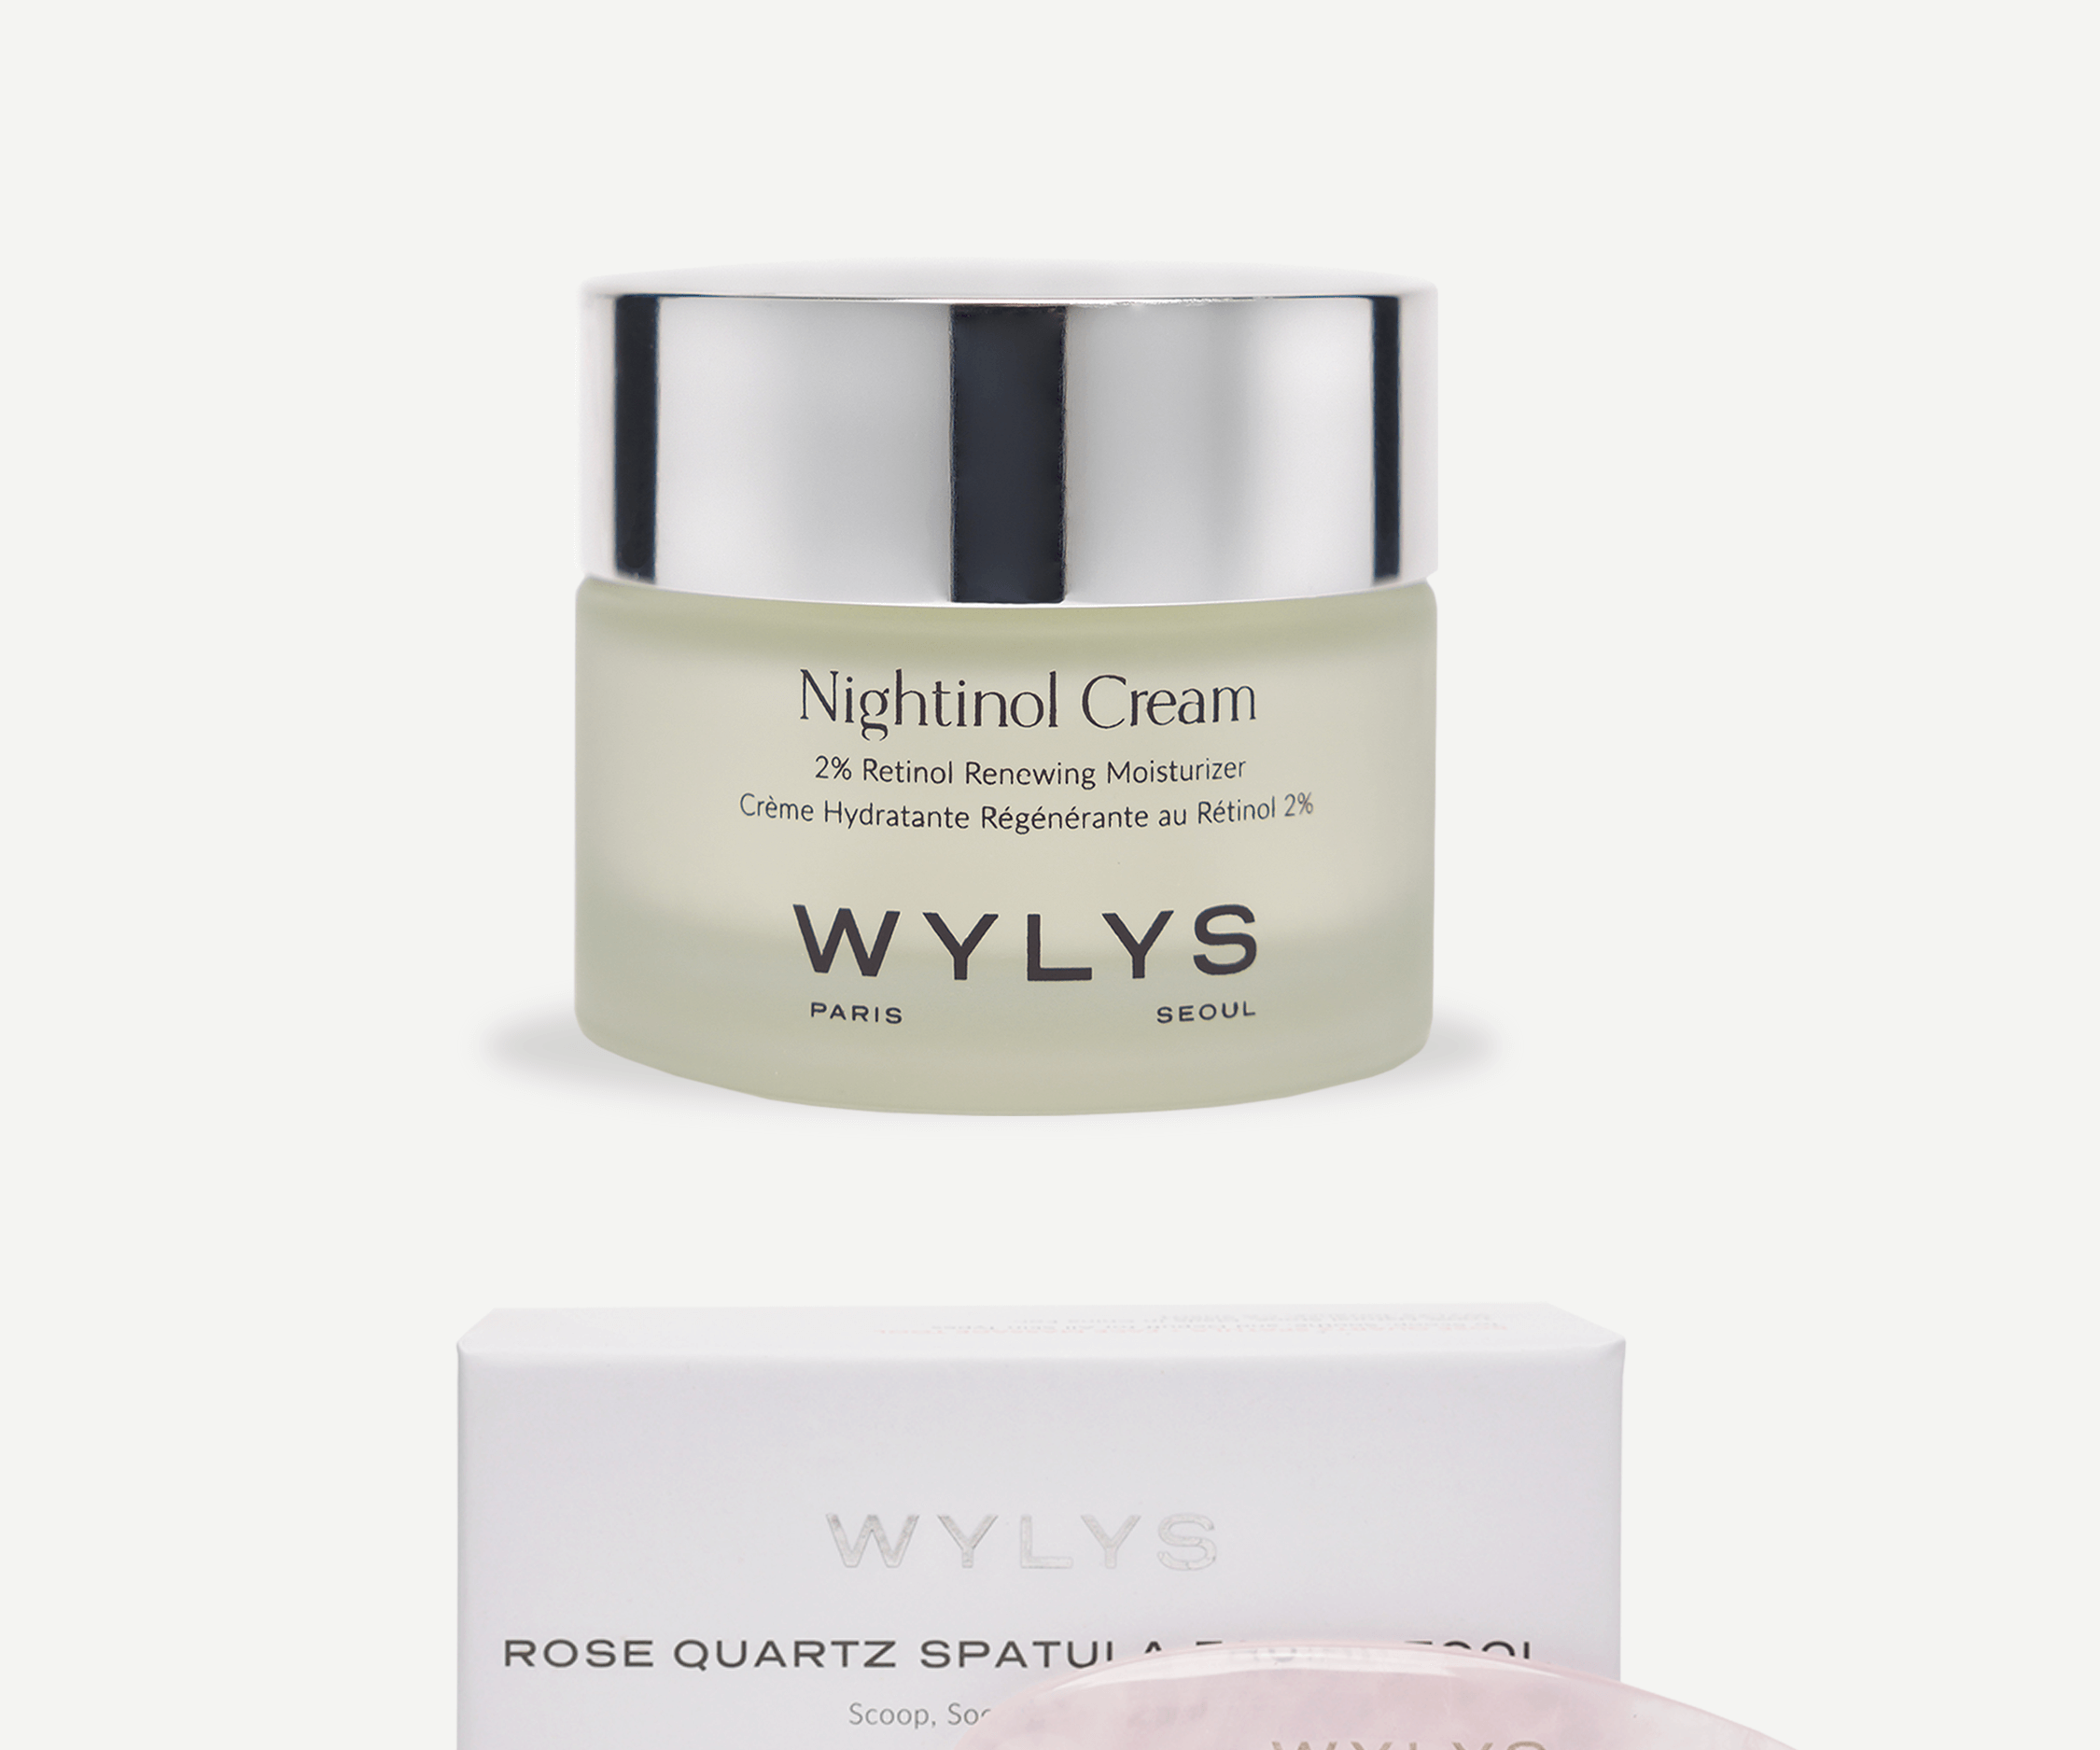 WYLYS Nightinol Cream with Rose Quartz Spatula Facial Tool